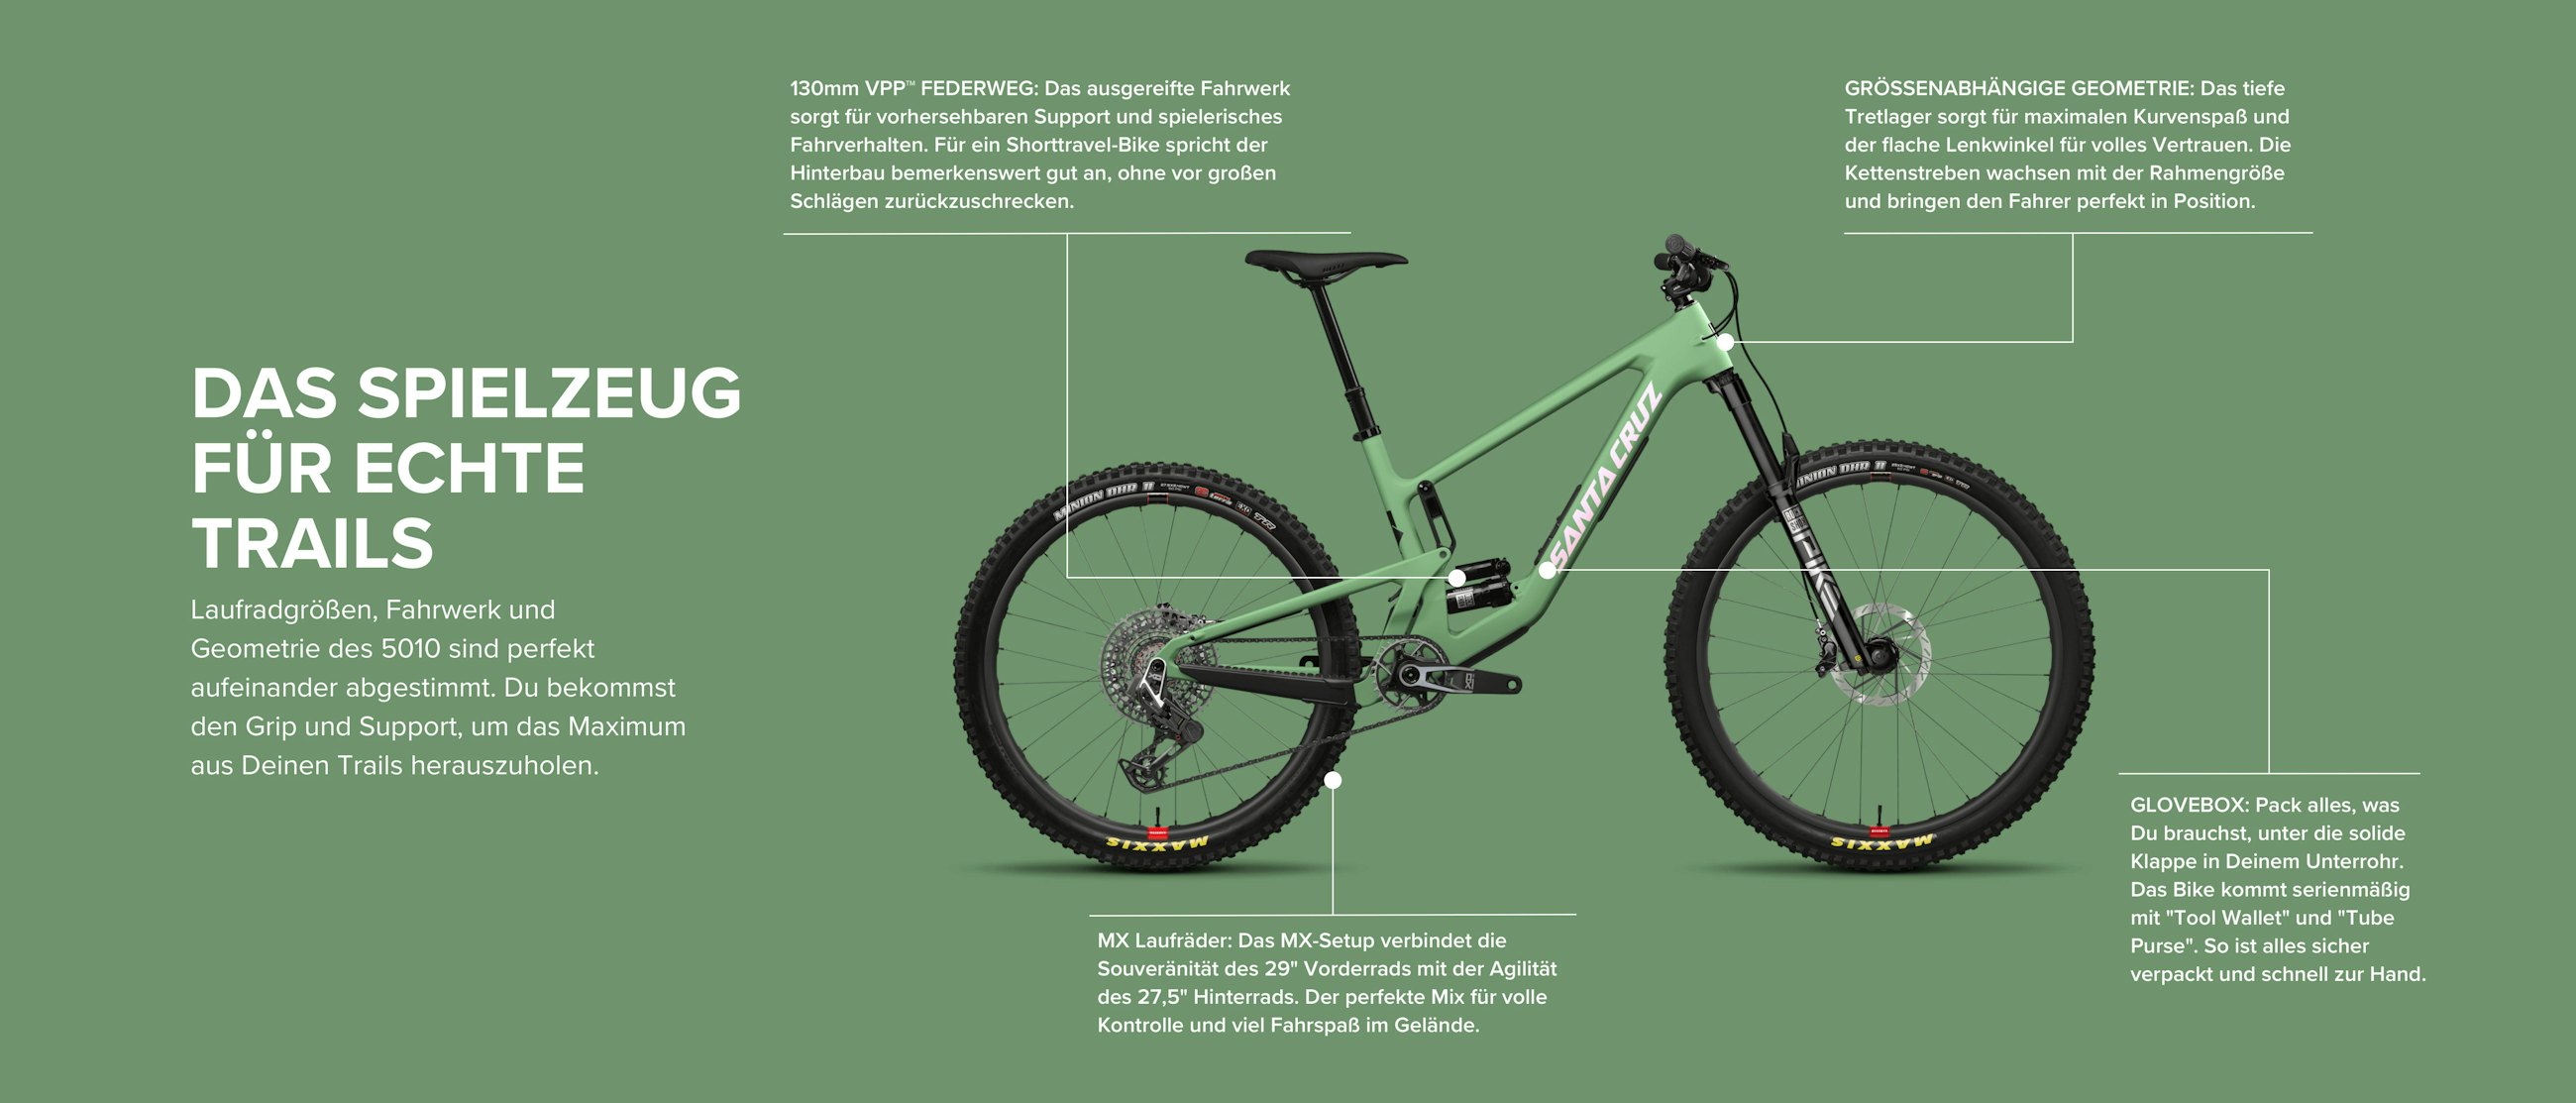 Santa Cruz Bicycles 5010 Design Details